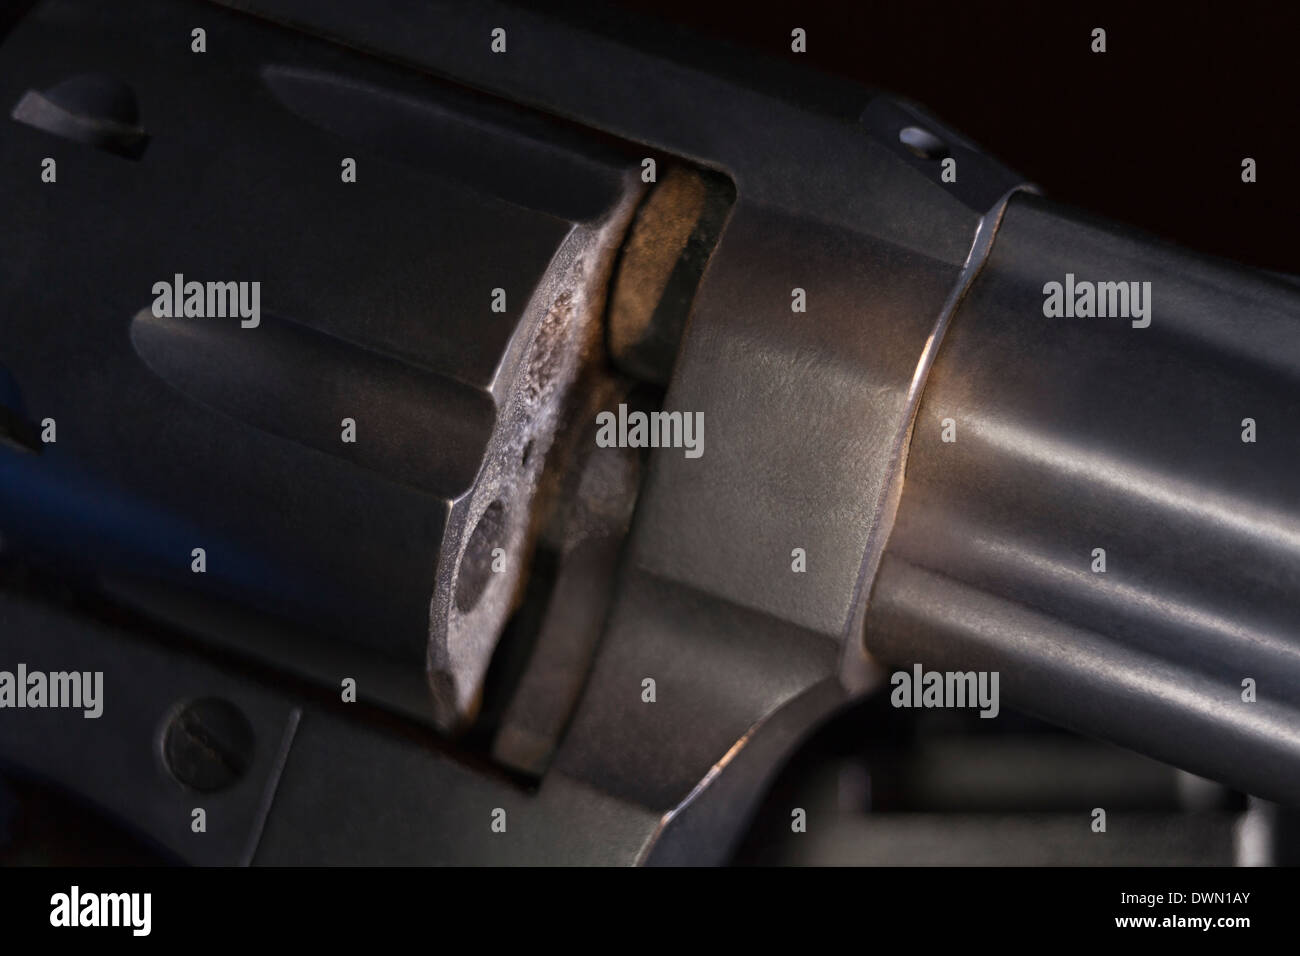 Detail of cylinder revolver handgun. Stock Photo